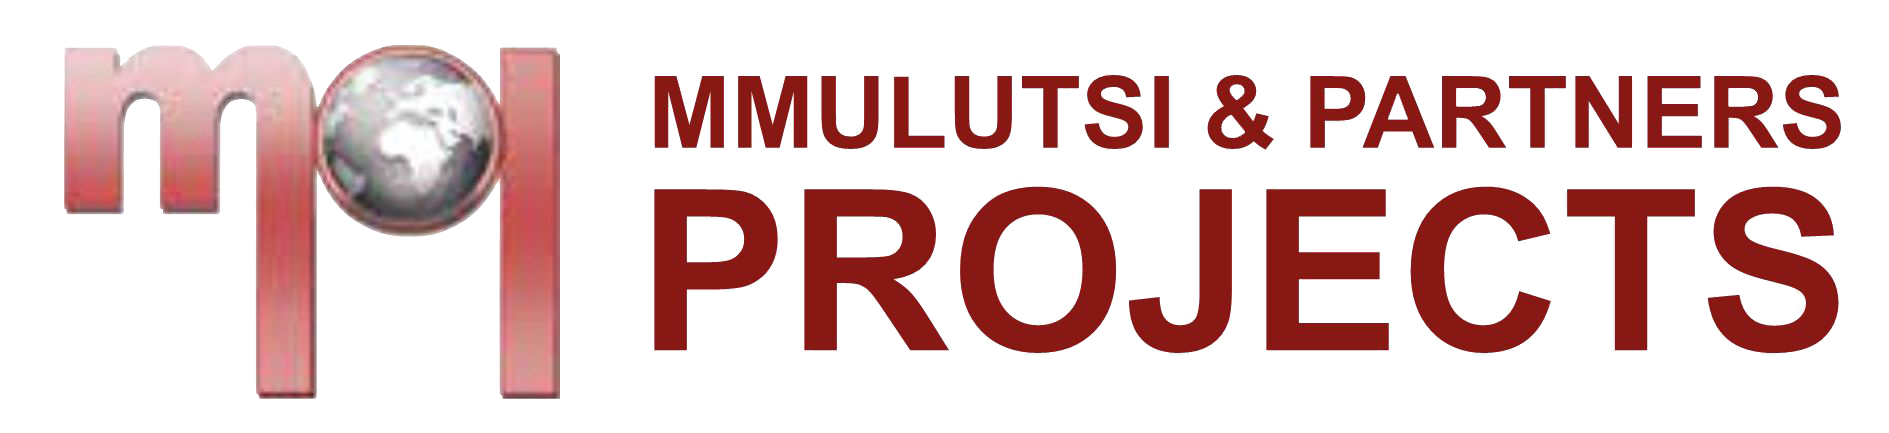 Mmulutsi & Partners Projects